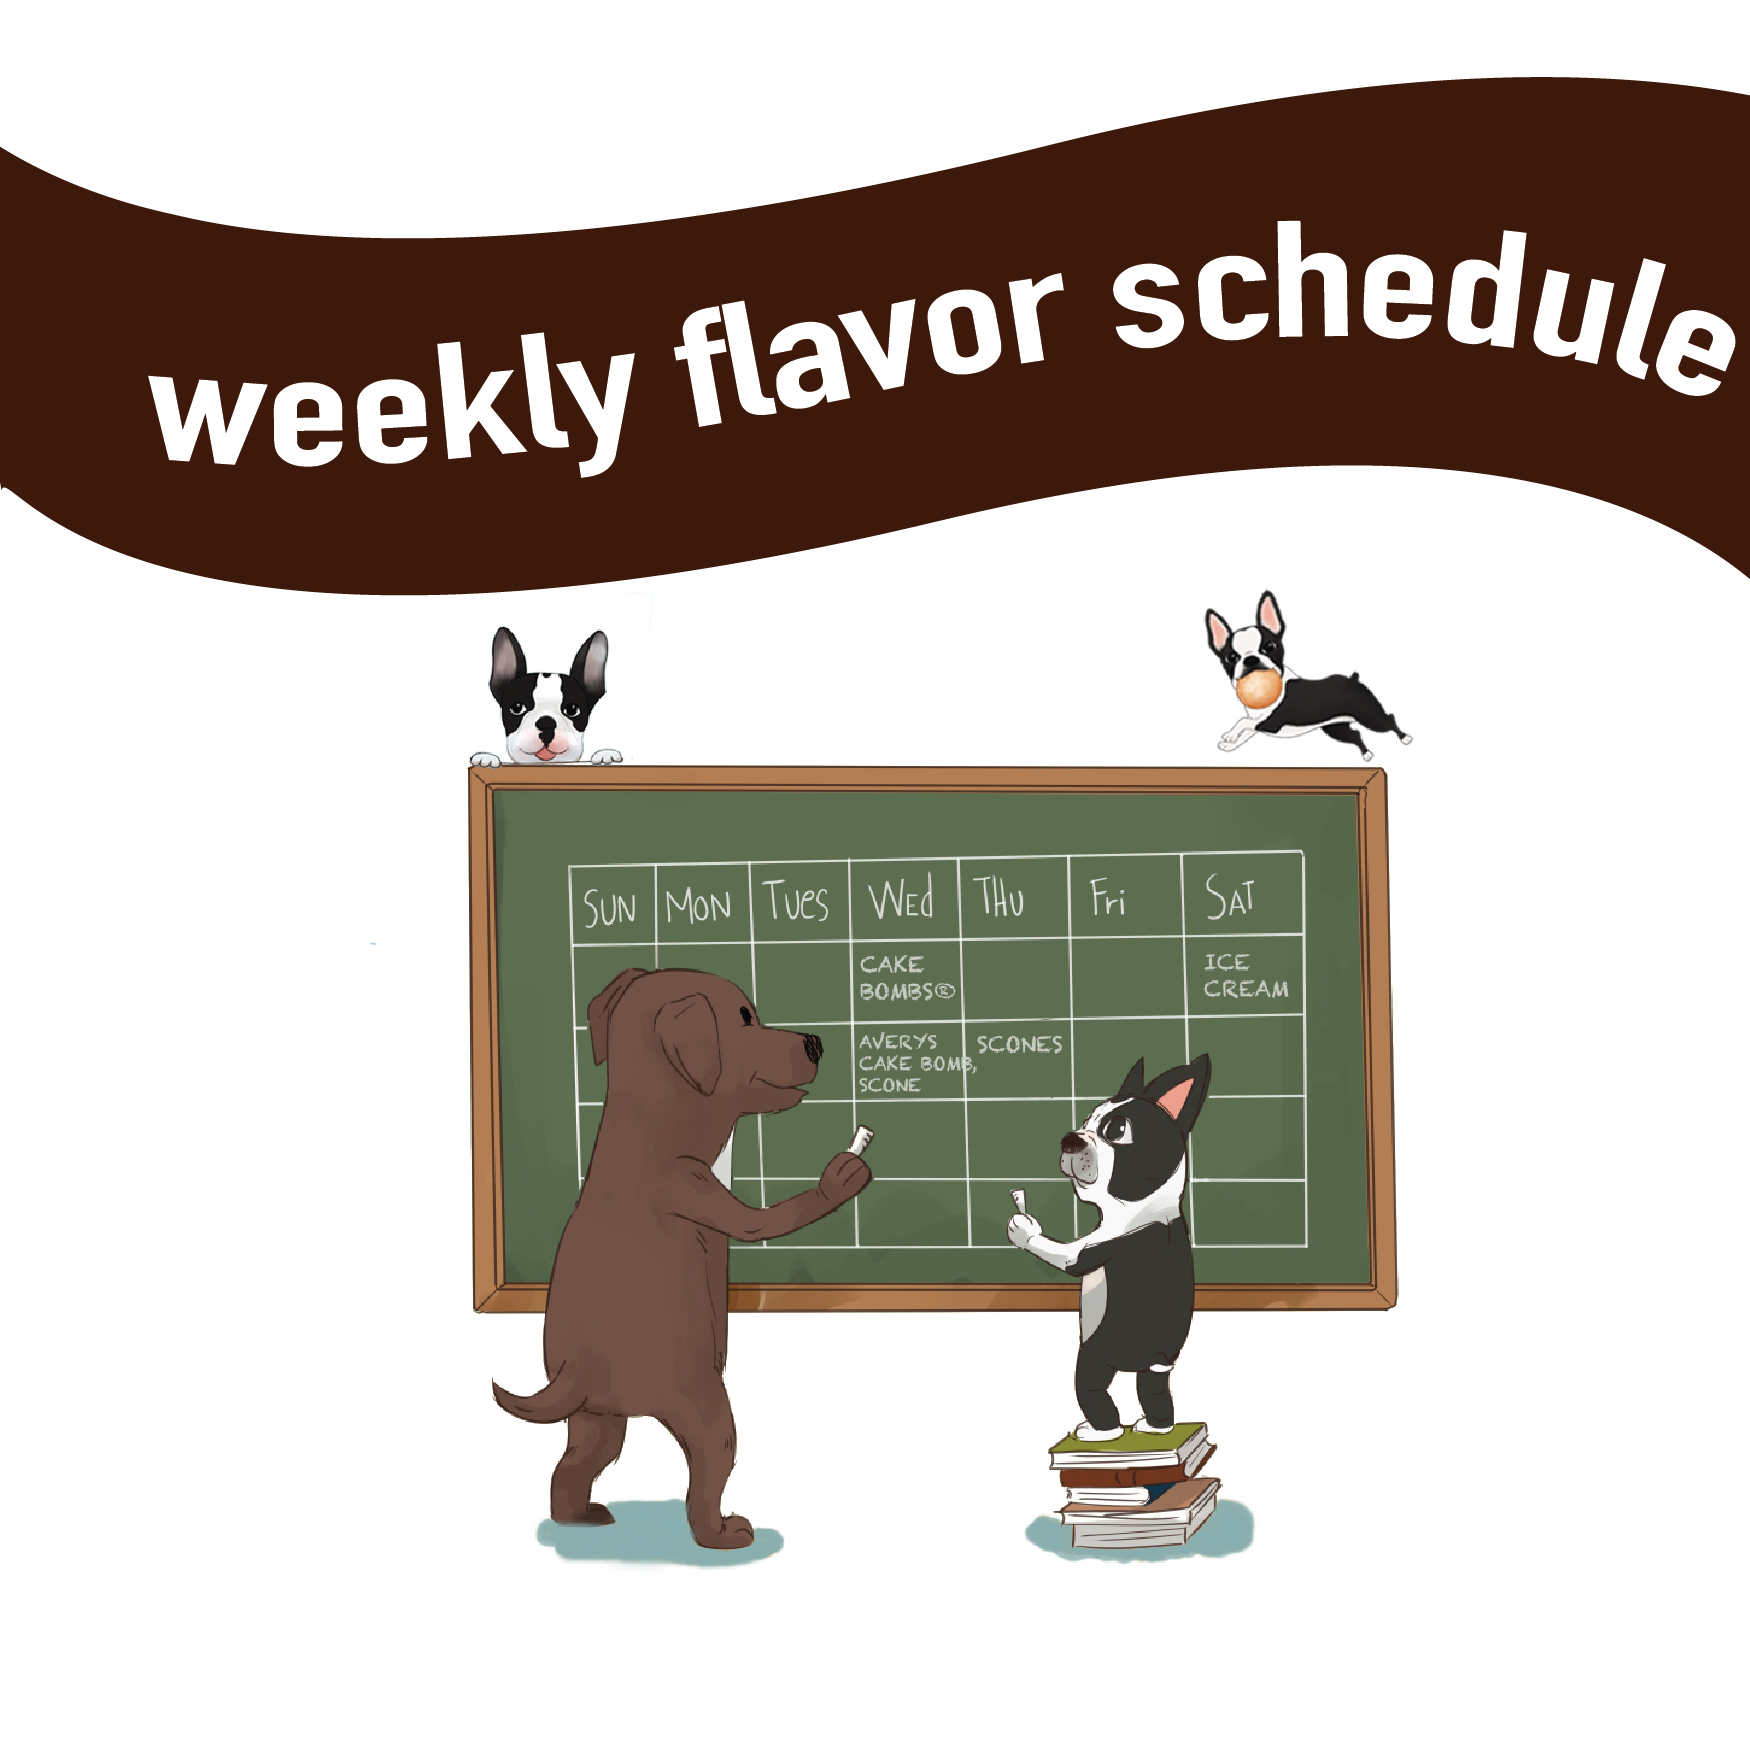 pipeline bakeshop & creamery menu weekly flavor schedule